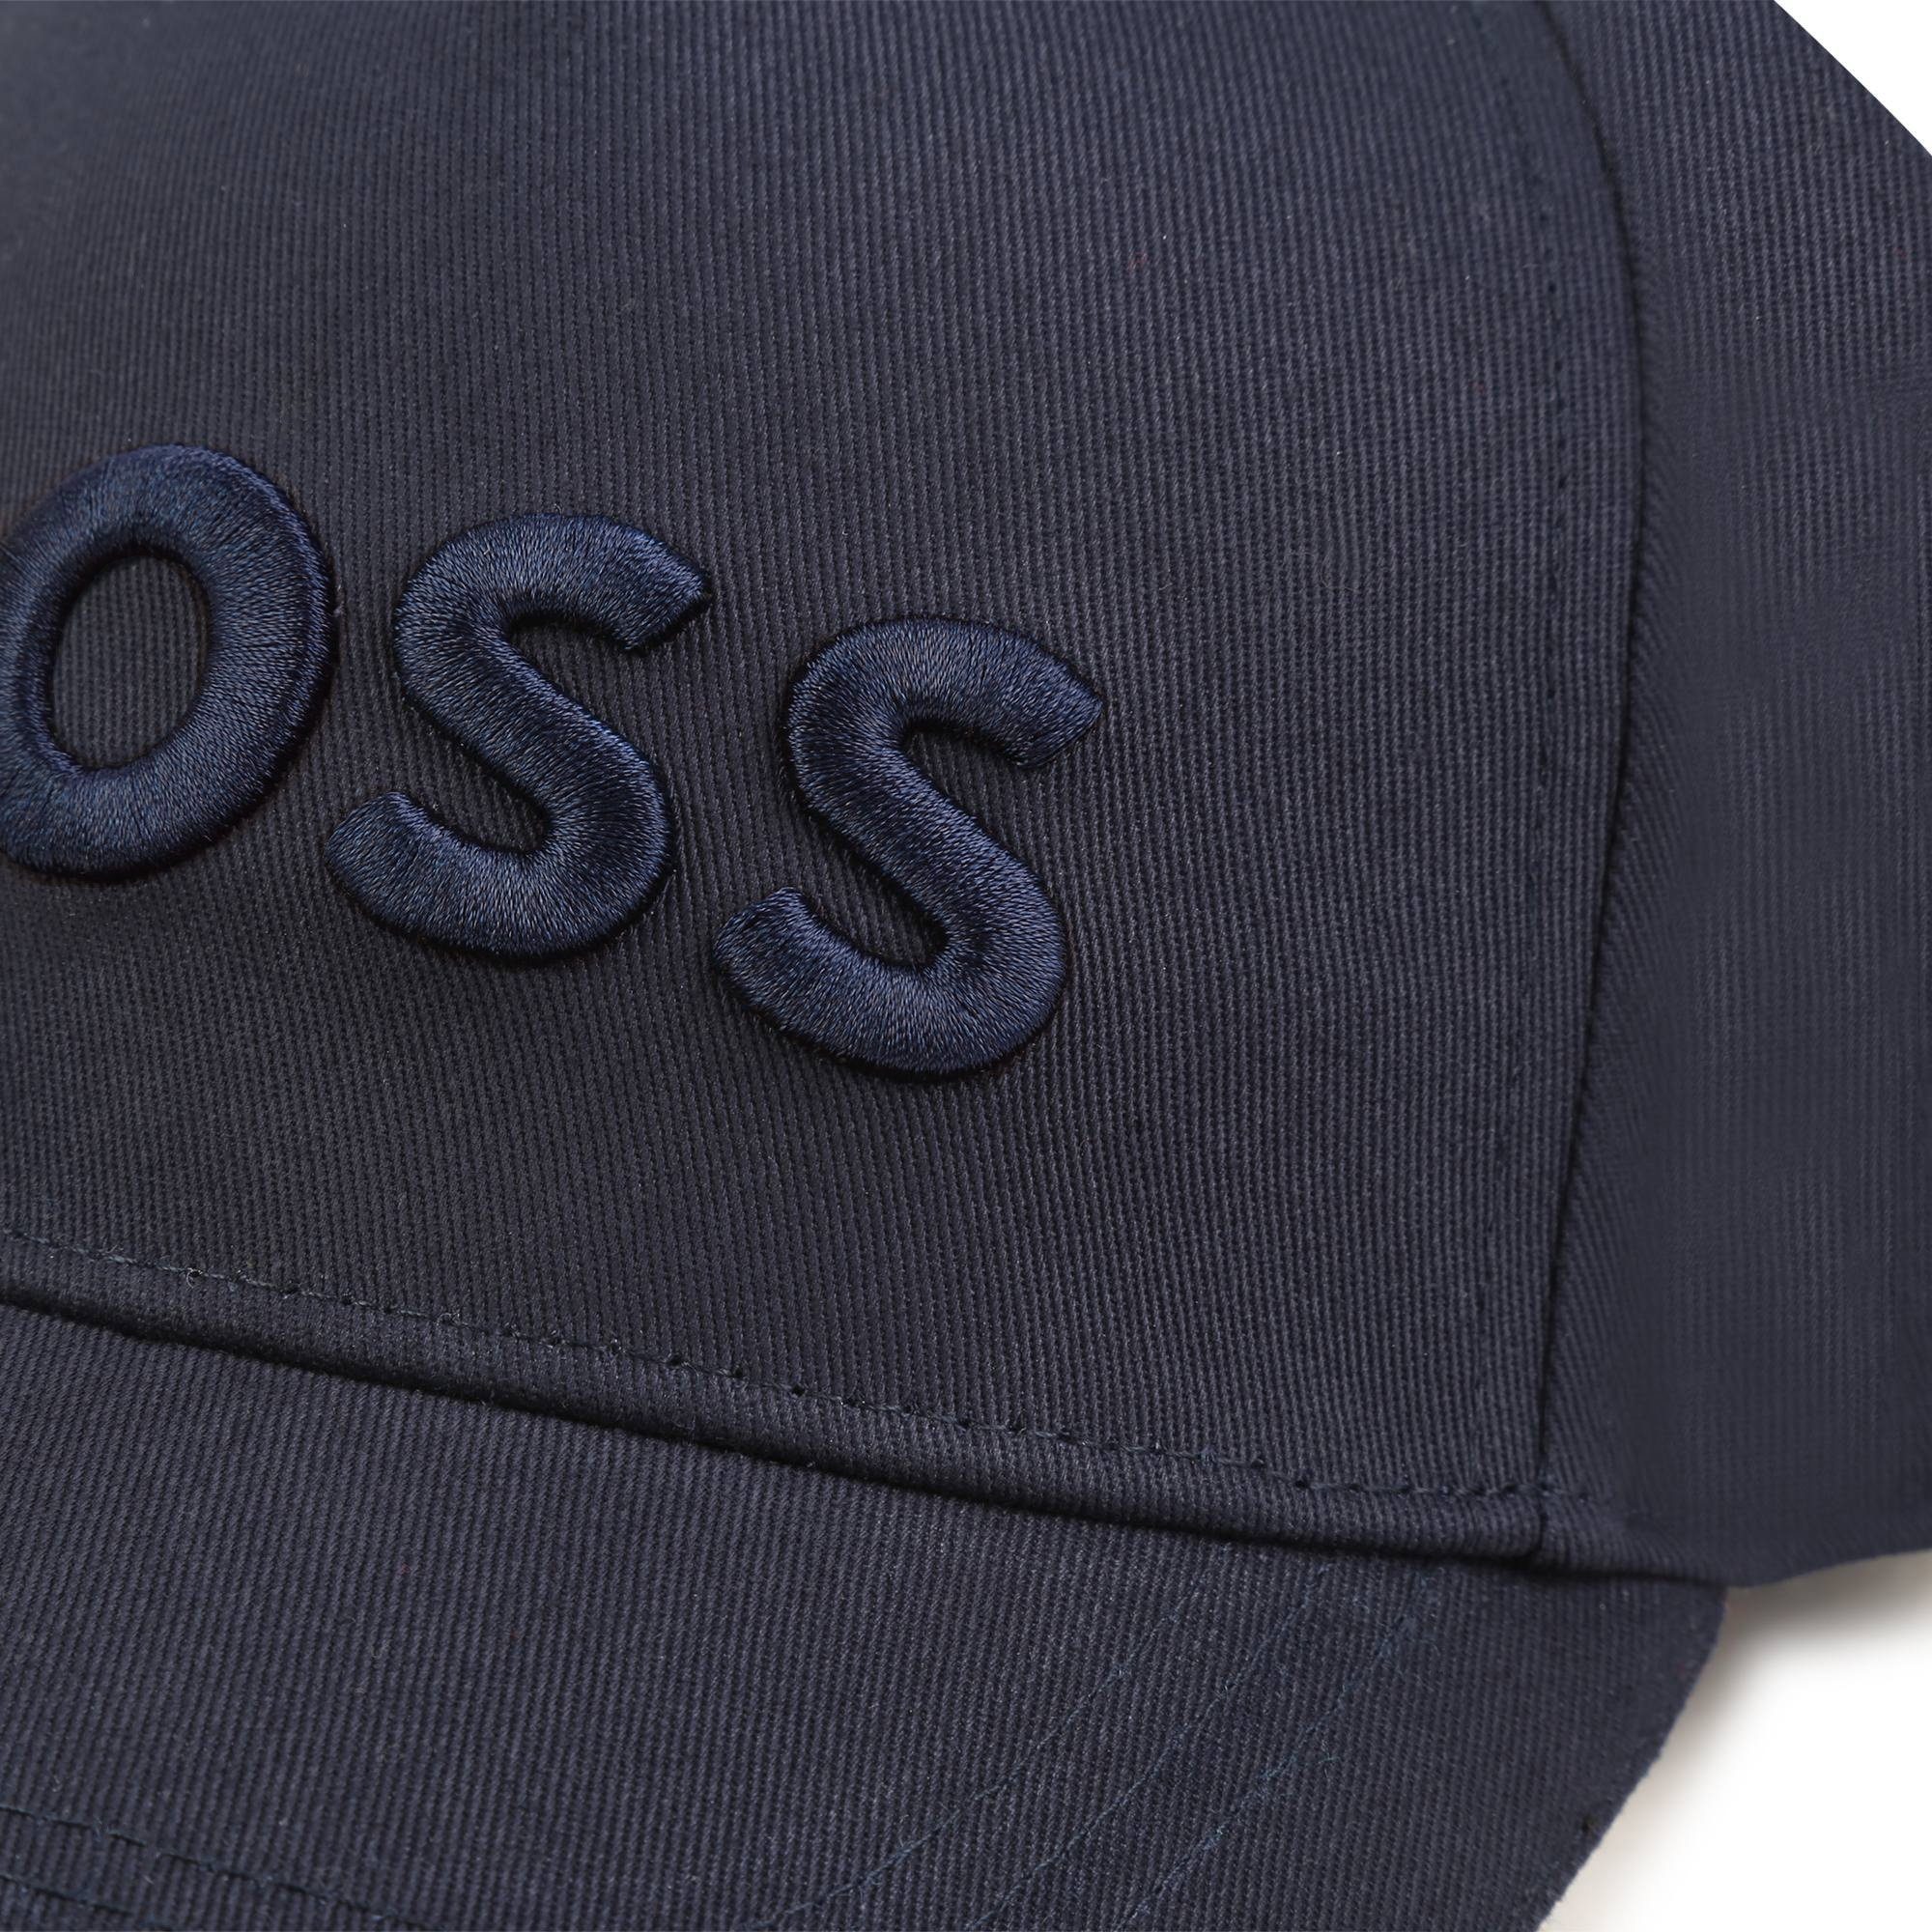 BOSS Baseball Cap Boss Kidswear DC Kappe. x Mehr Statement! eine Ein - nur als Comics